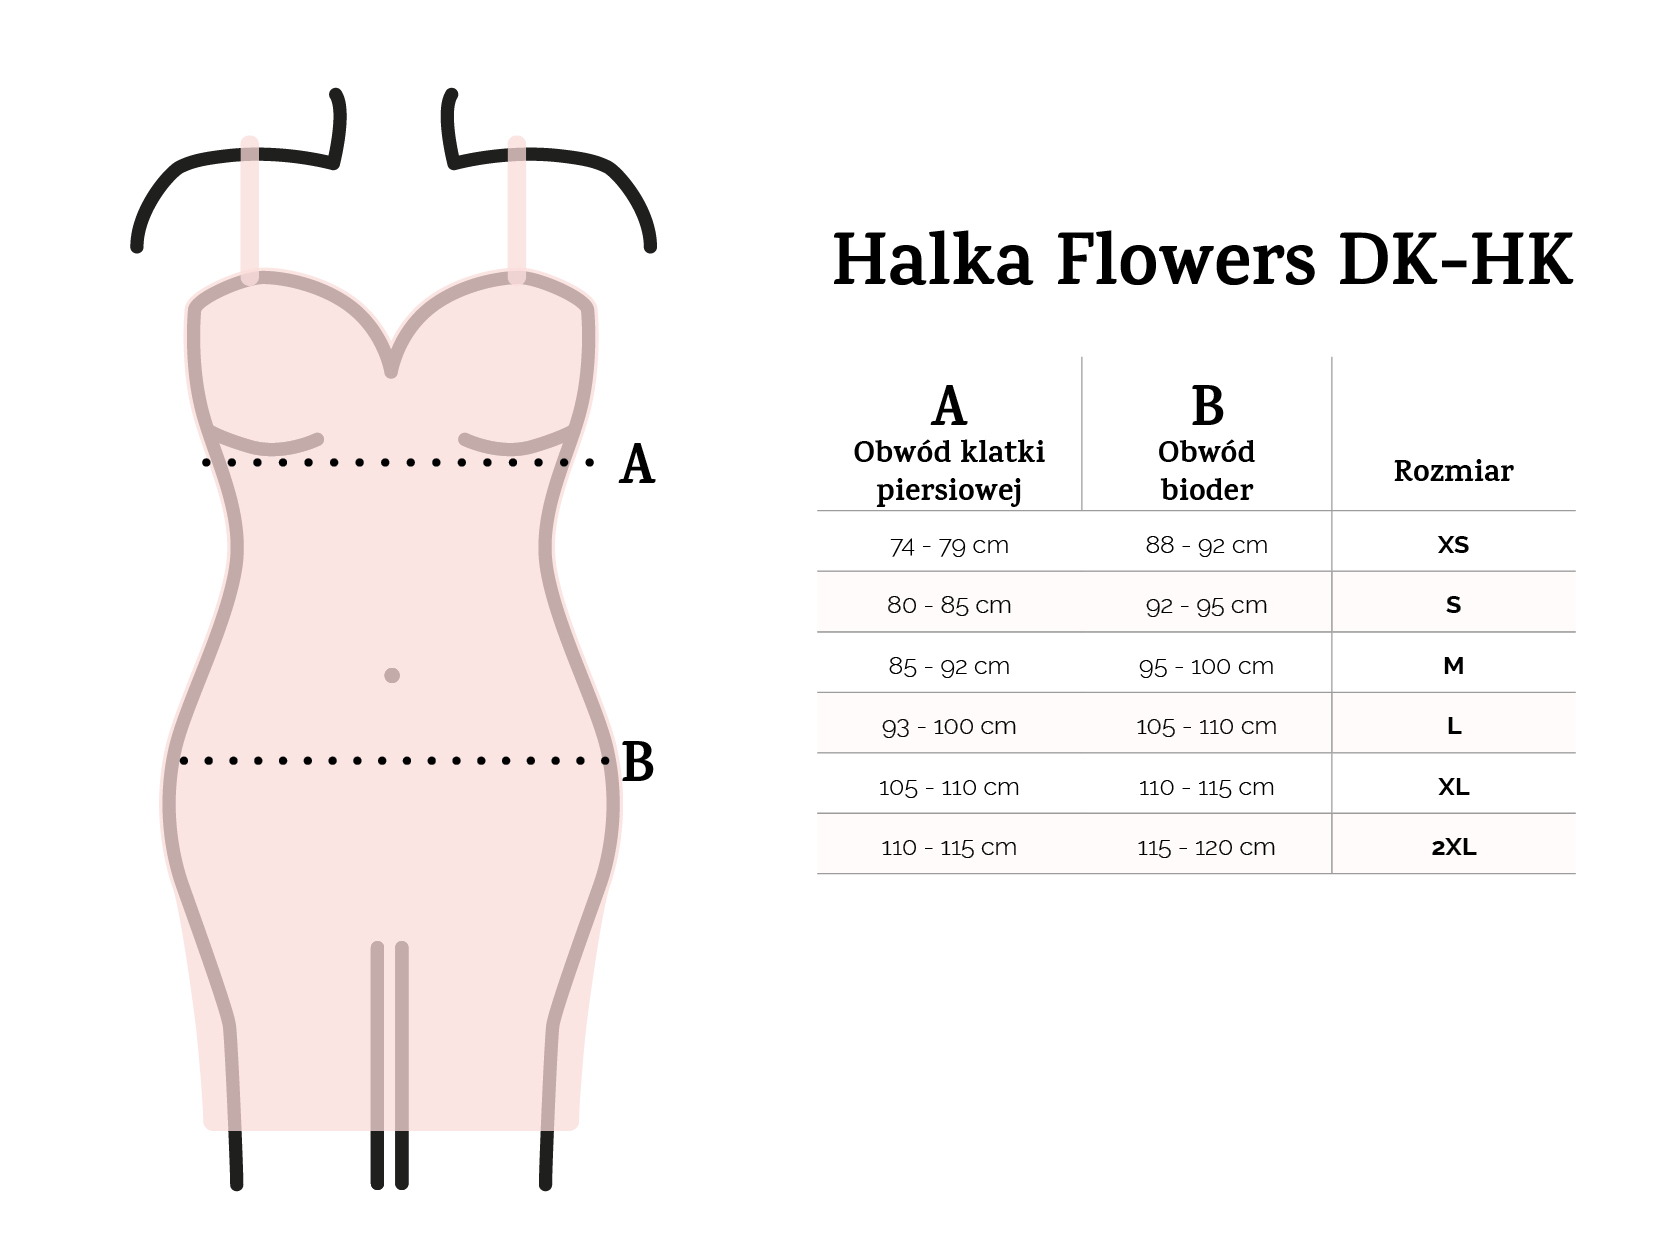 Halka Flowers DK-HK